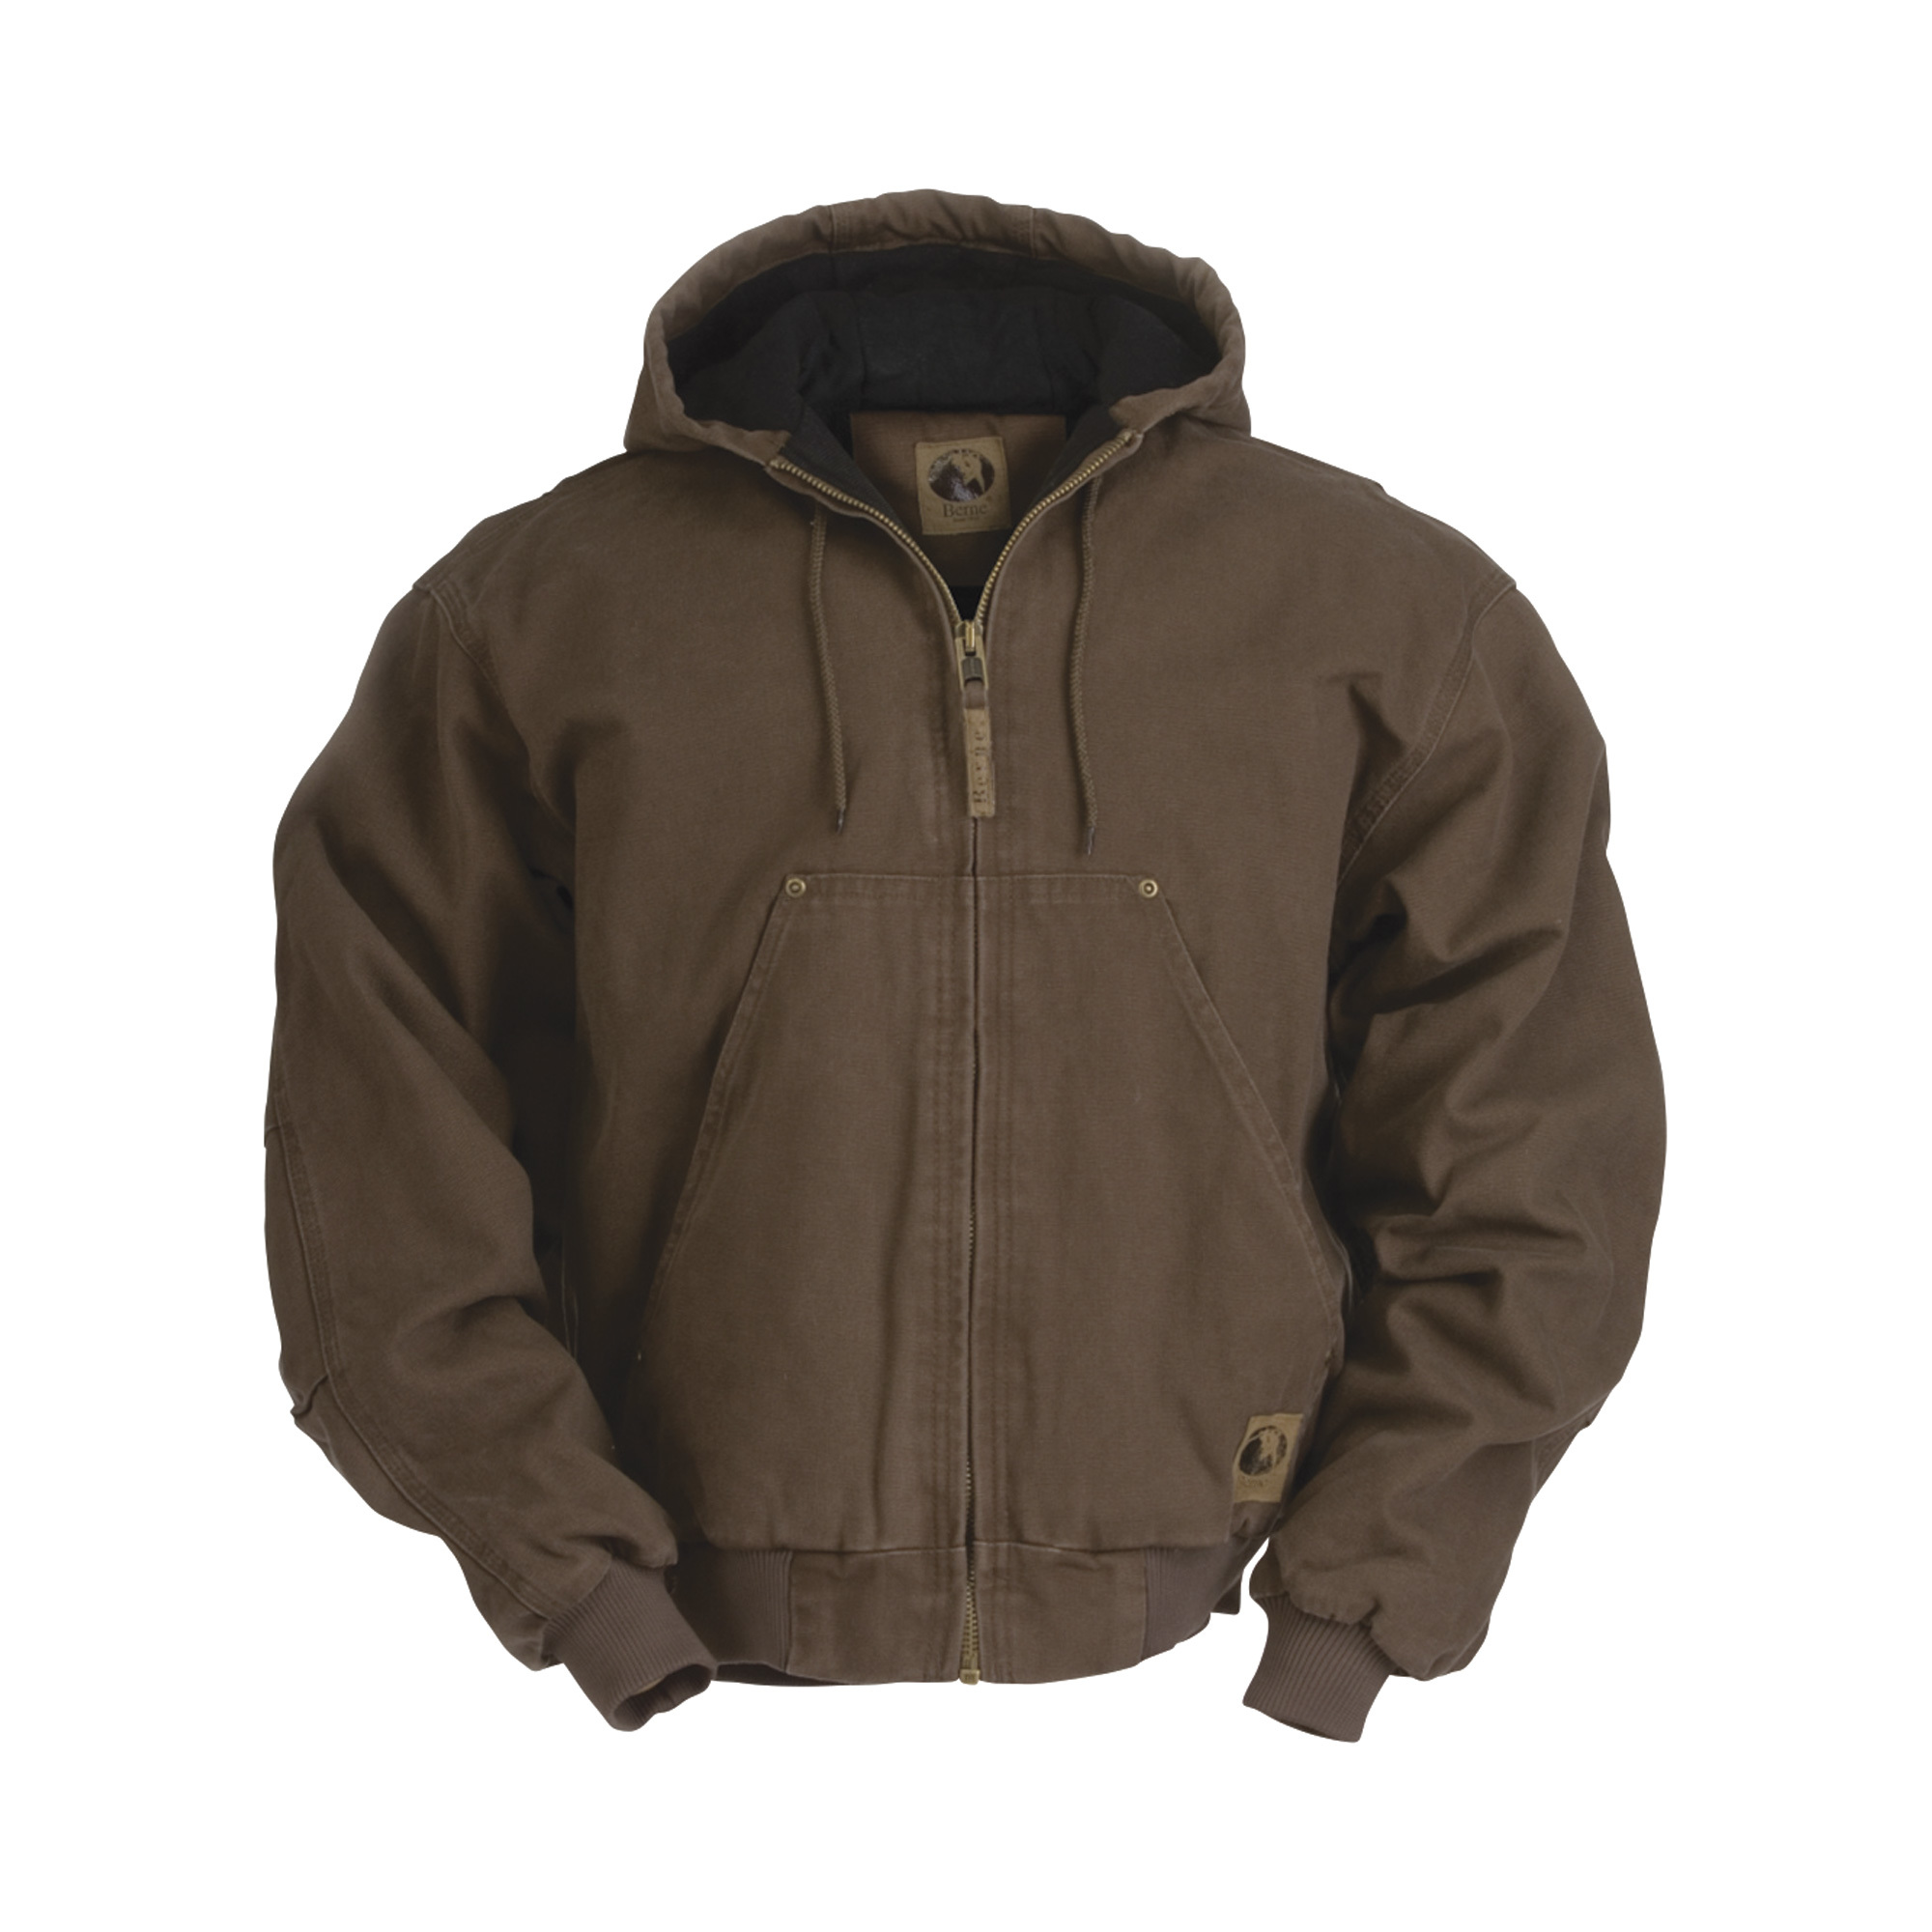 Berne Men's Original Washed Hooded Jacket - Quilt Lined, Bark, XL, Model HJ375BBR480